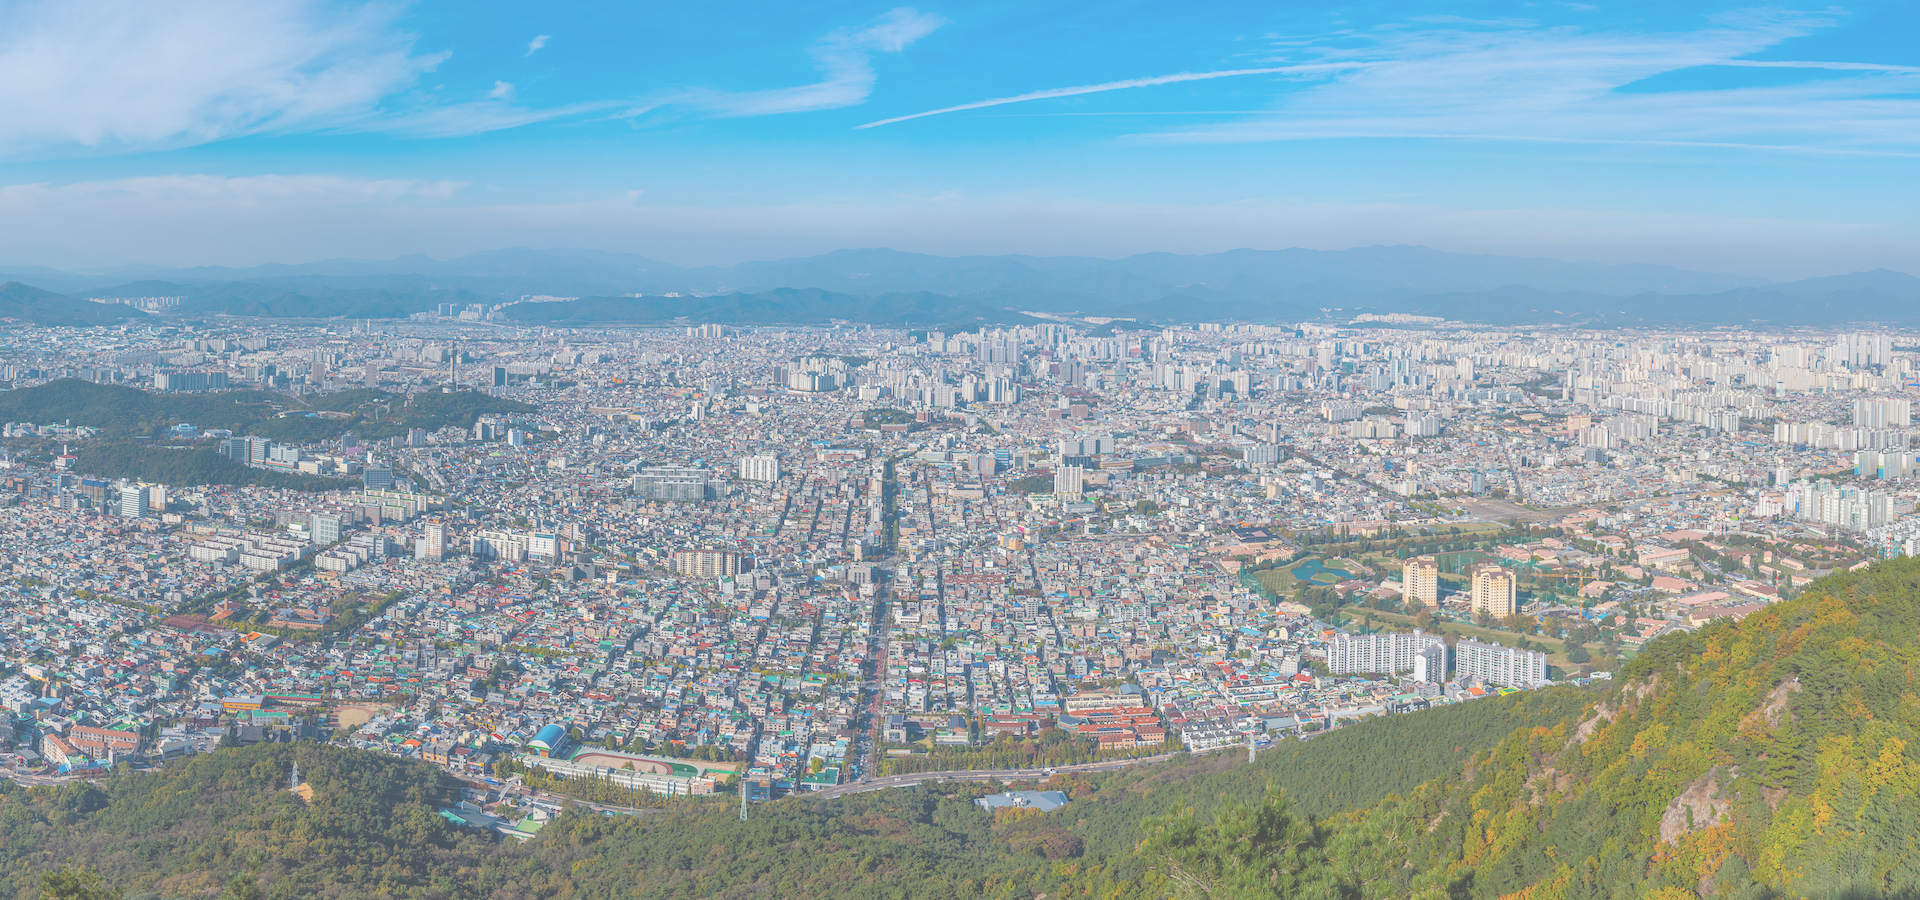 <b>Asia/Seoul/Daegu</b>